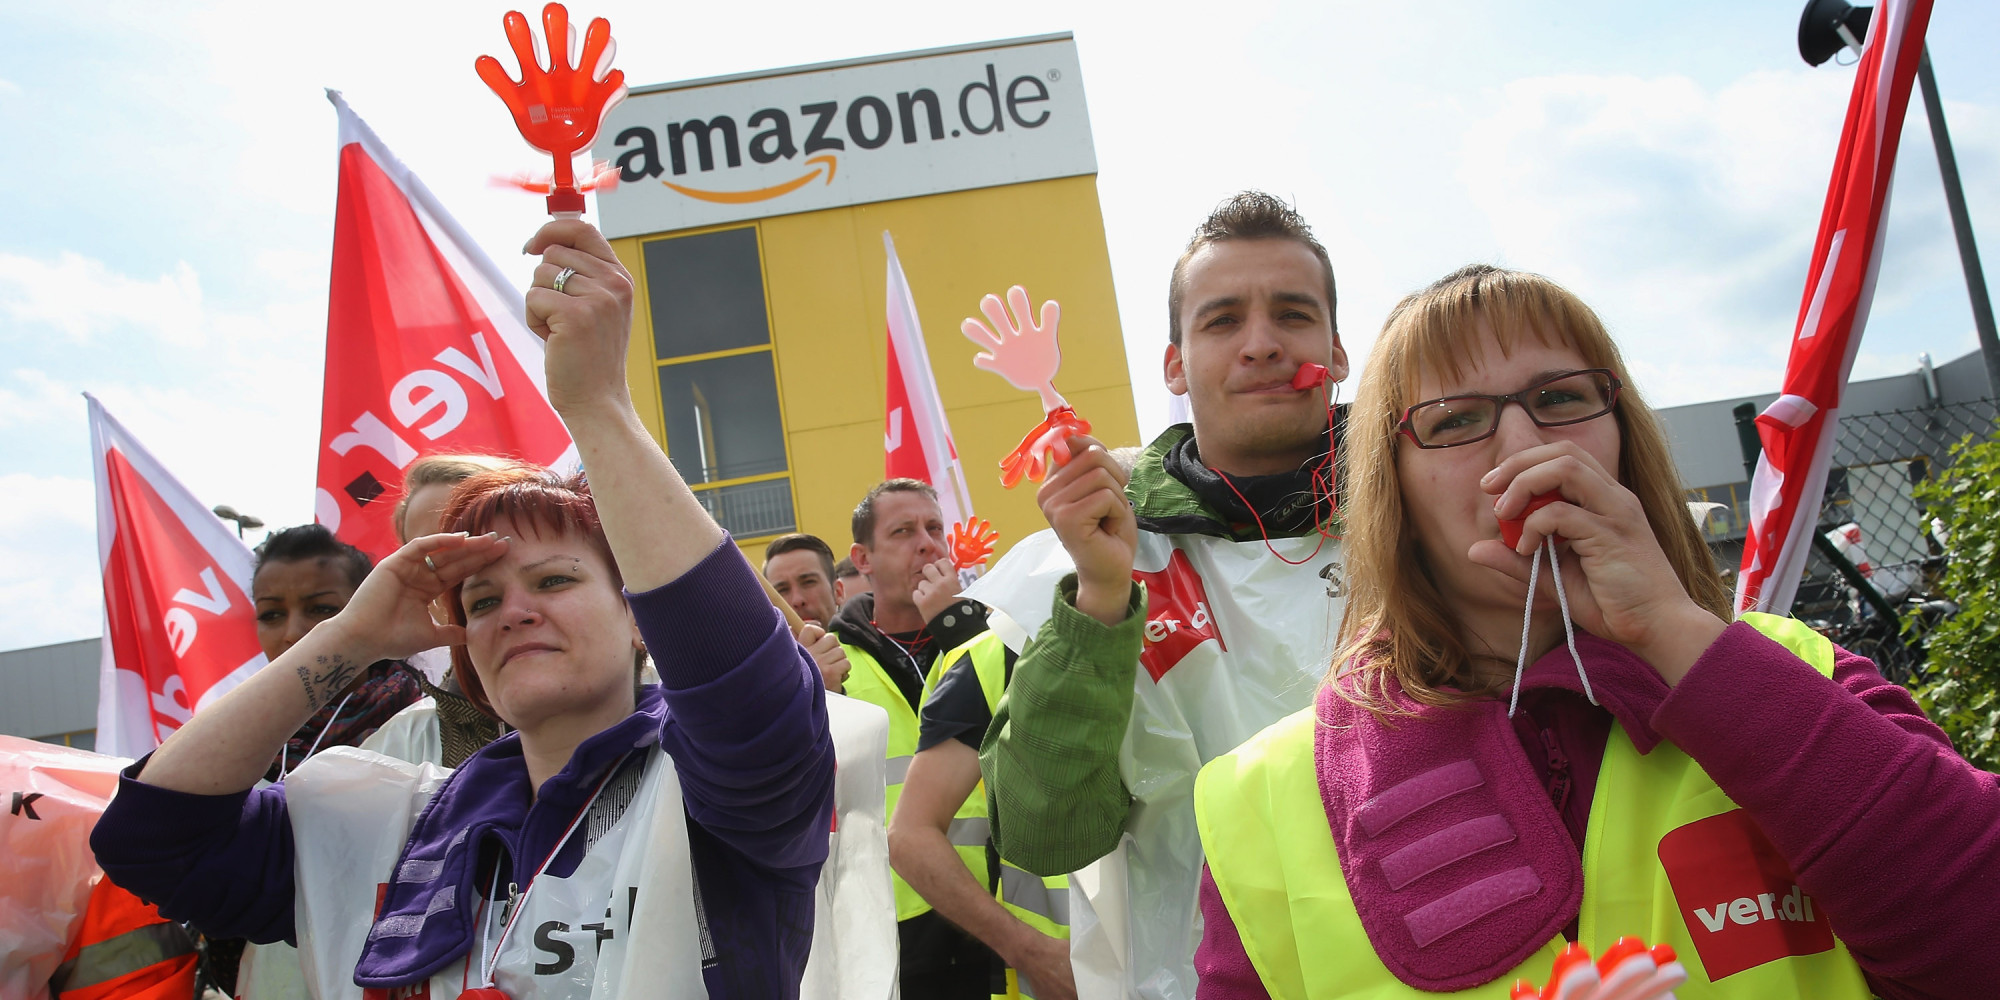 Bundesweite Solidarität für die Amazon-Streiks!